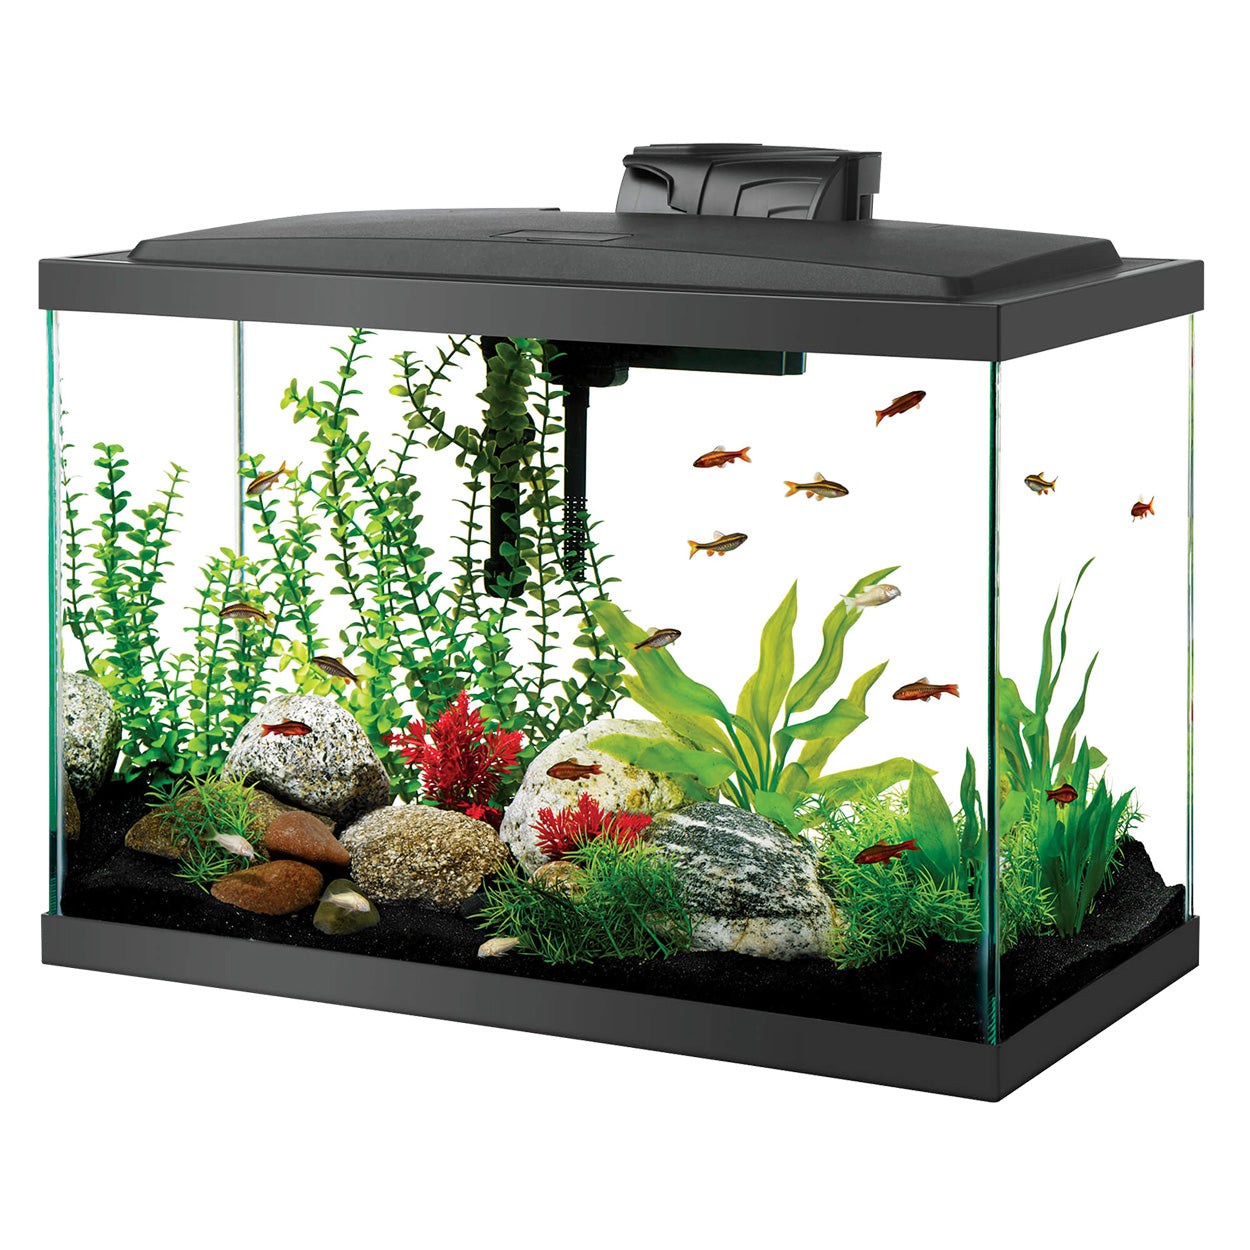 Aquarium Product -> Aquariums & Furniture -> Aquarium Kits